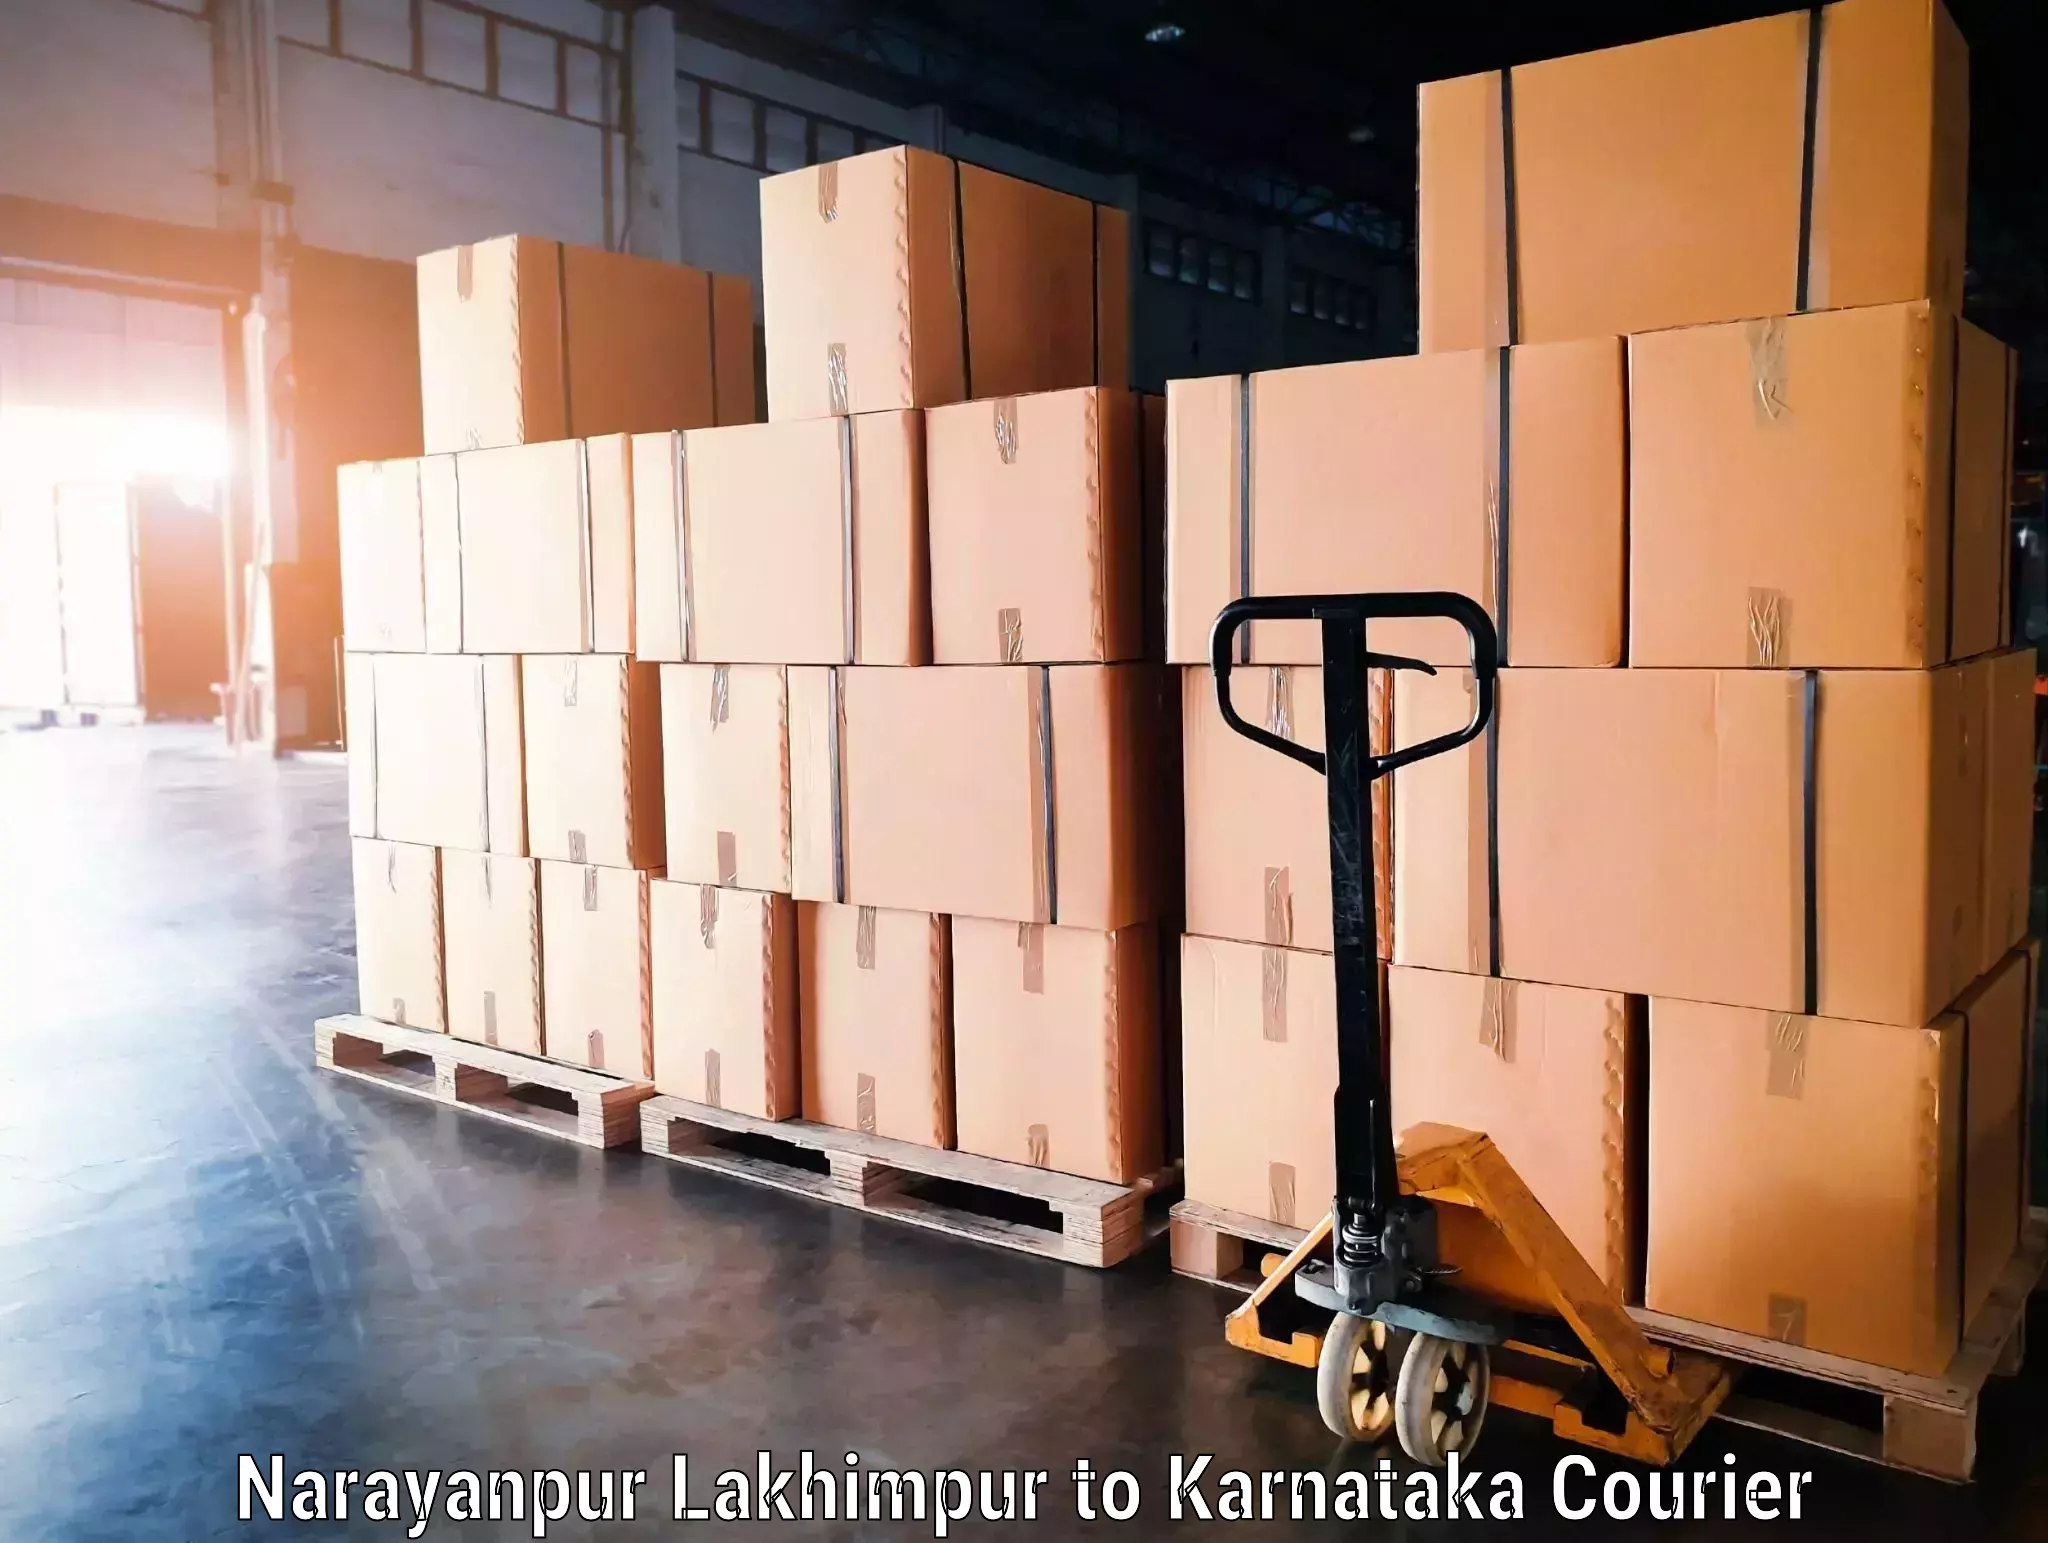 Luggage shipment tracking Narayanpur Lakhimpur to Mandya